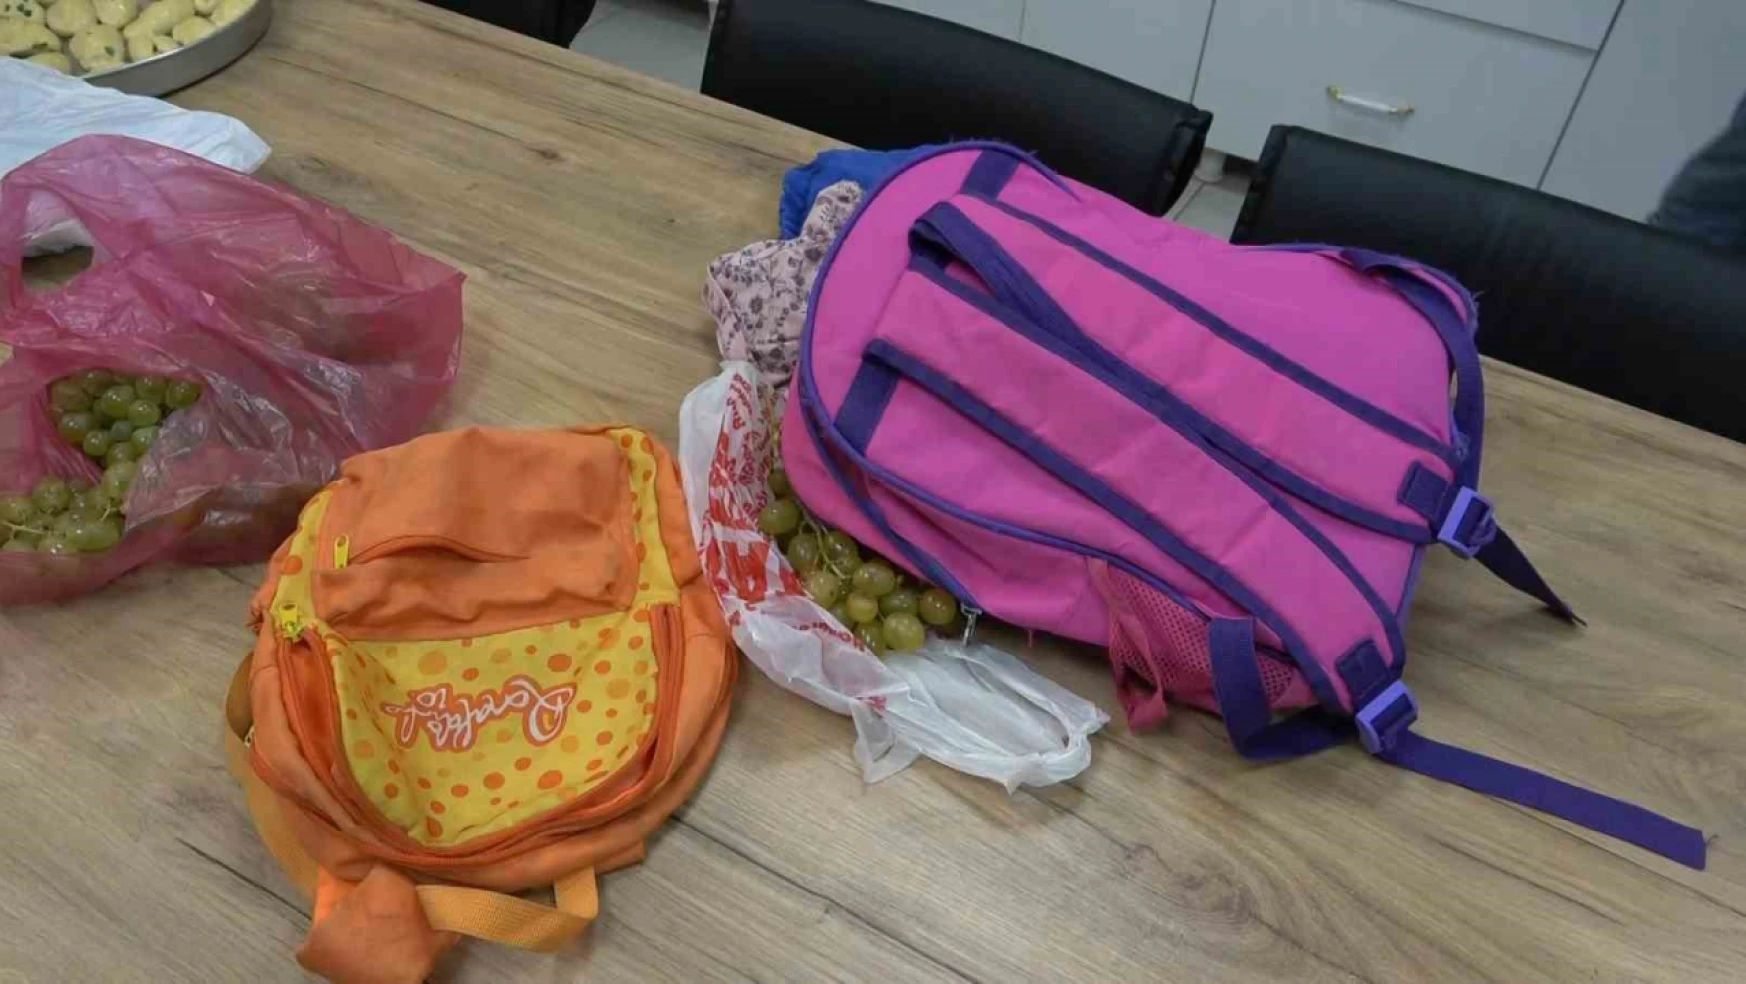 Elazığ'da dilenci operasyonu: Okul çantalarından defter kitap yerine para çıkardılar